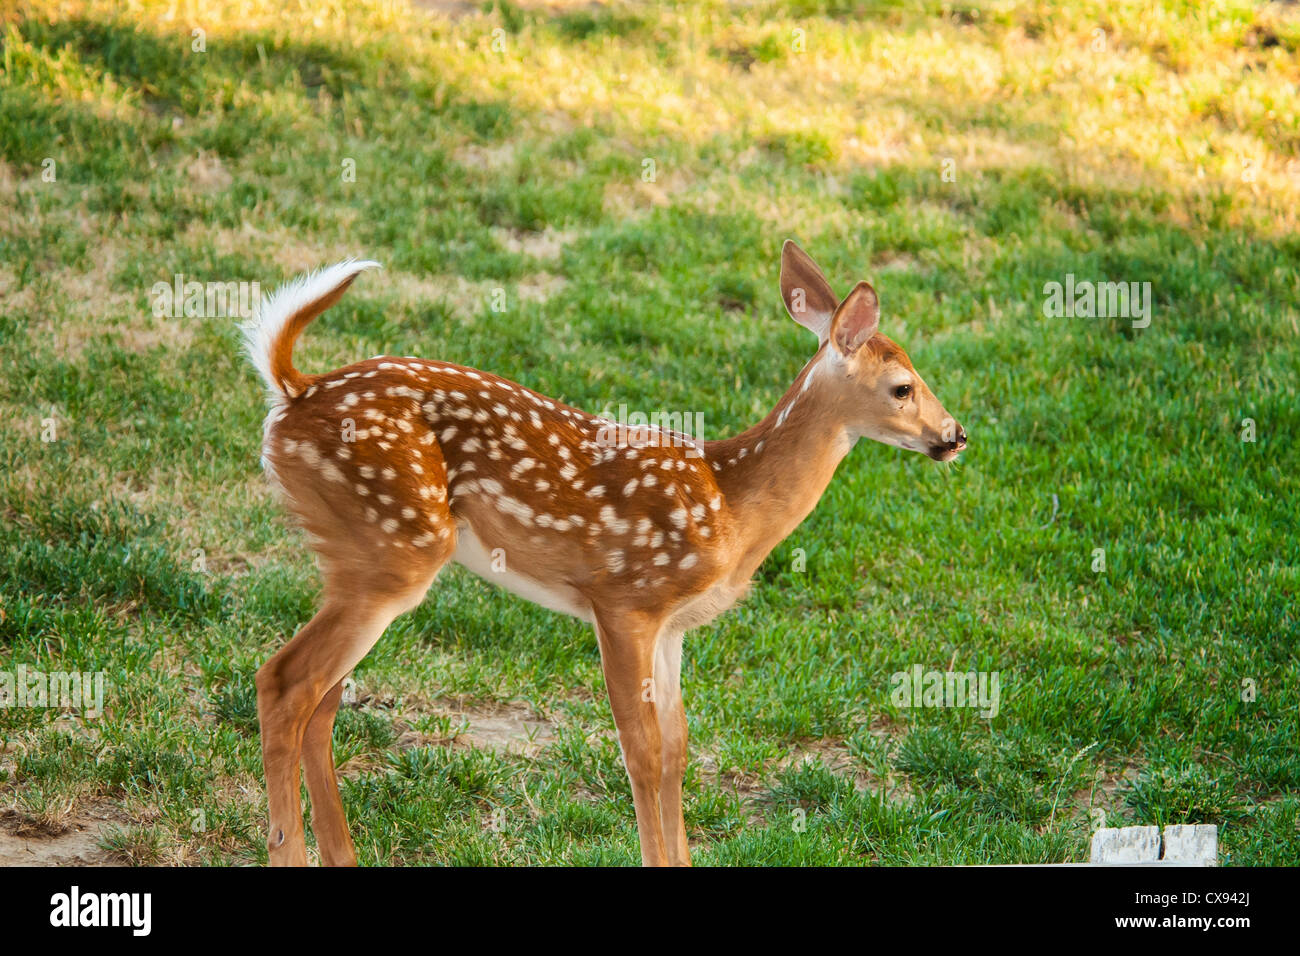 deer with spots